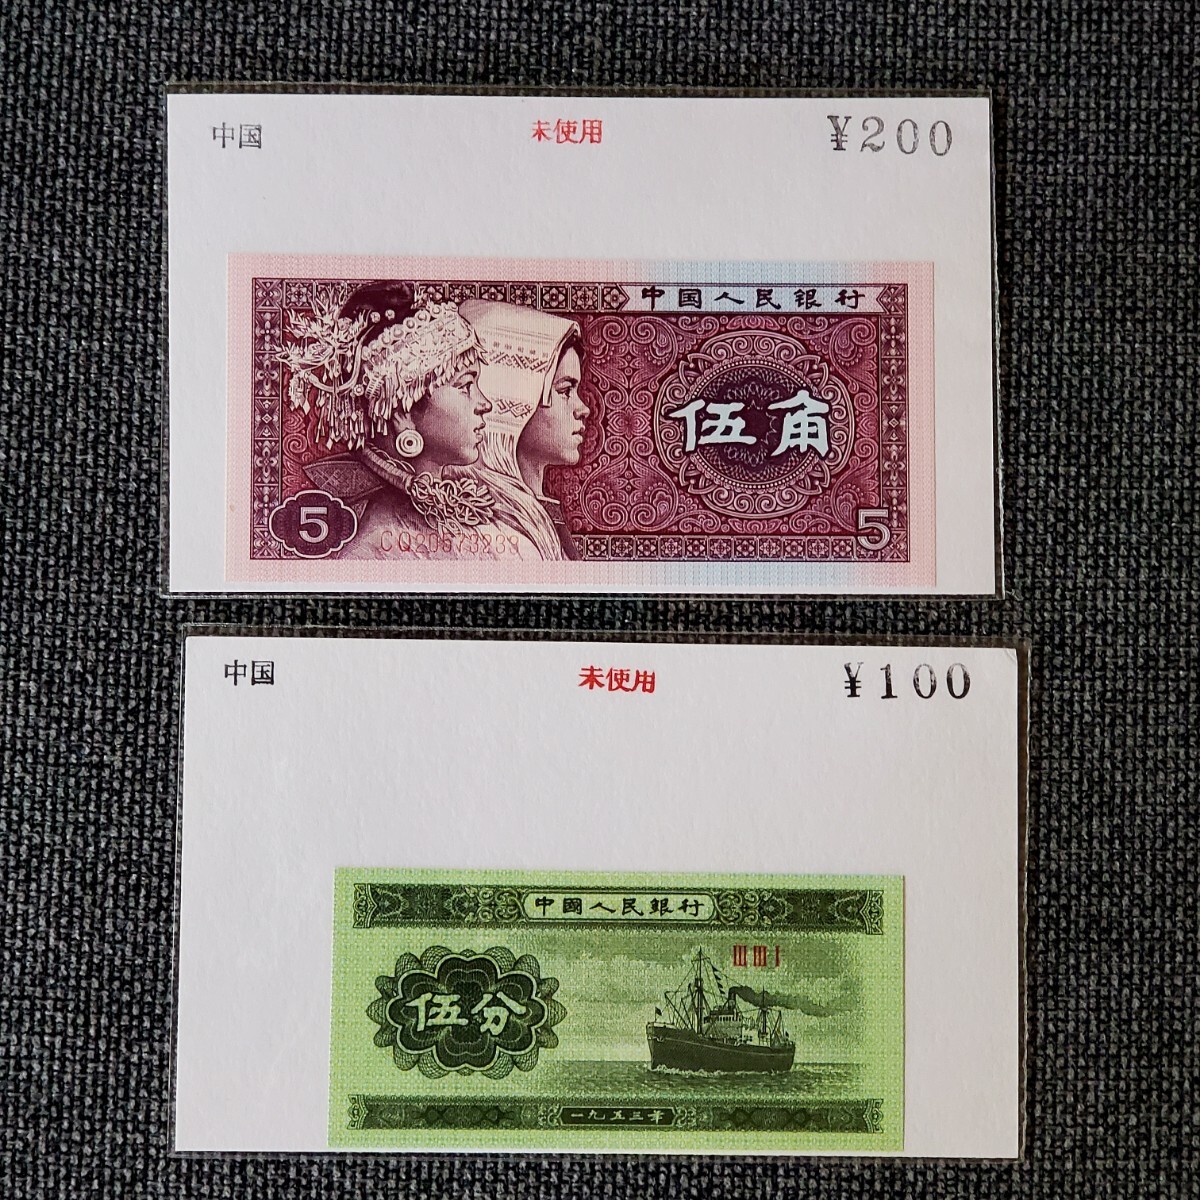  зарубежный банкноты не использовался старый банкноты итого 18 листов China ne жемчуг Россия Indonesia ka The f Stan arumeni есть toaniauklaina и т.п. 